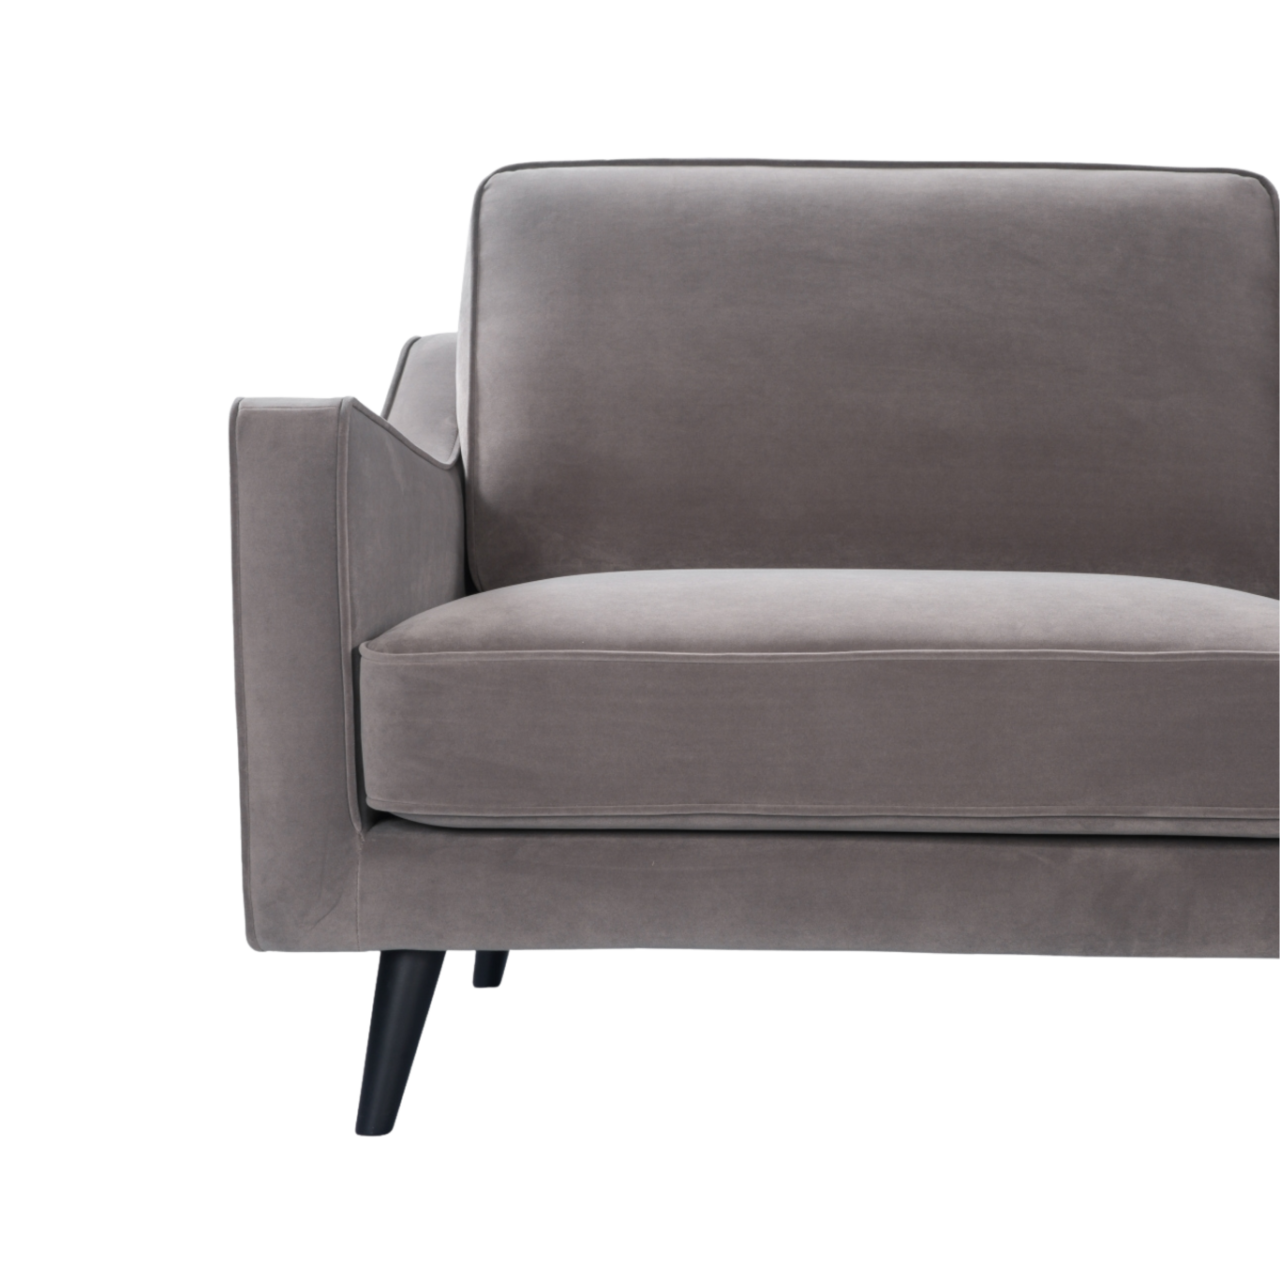 compact, modern 2 seater sofa in grey velvet